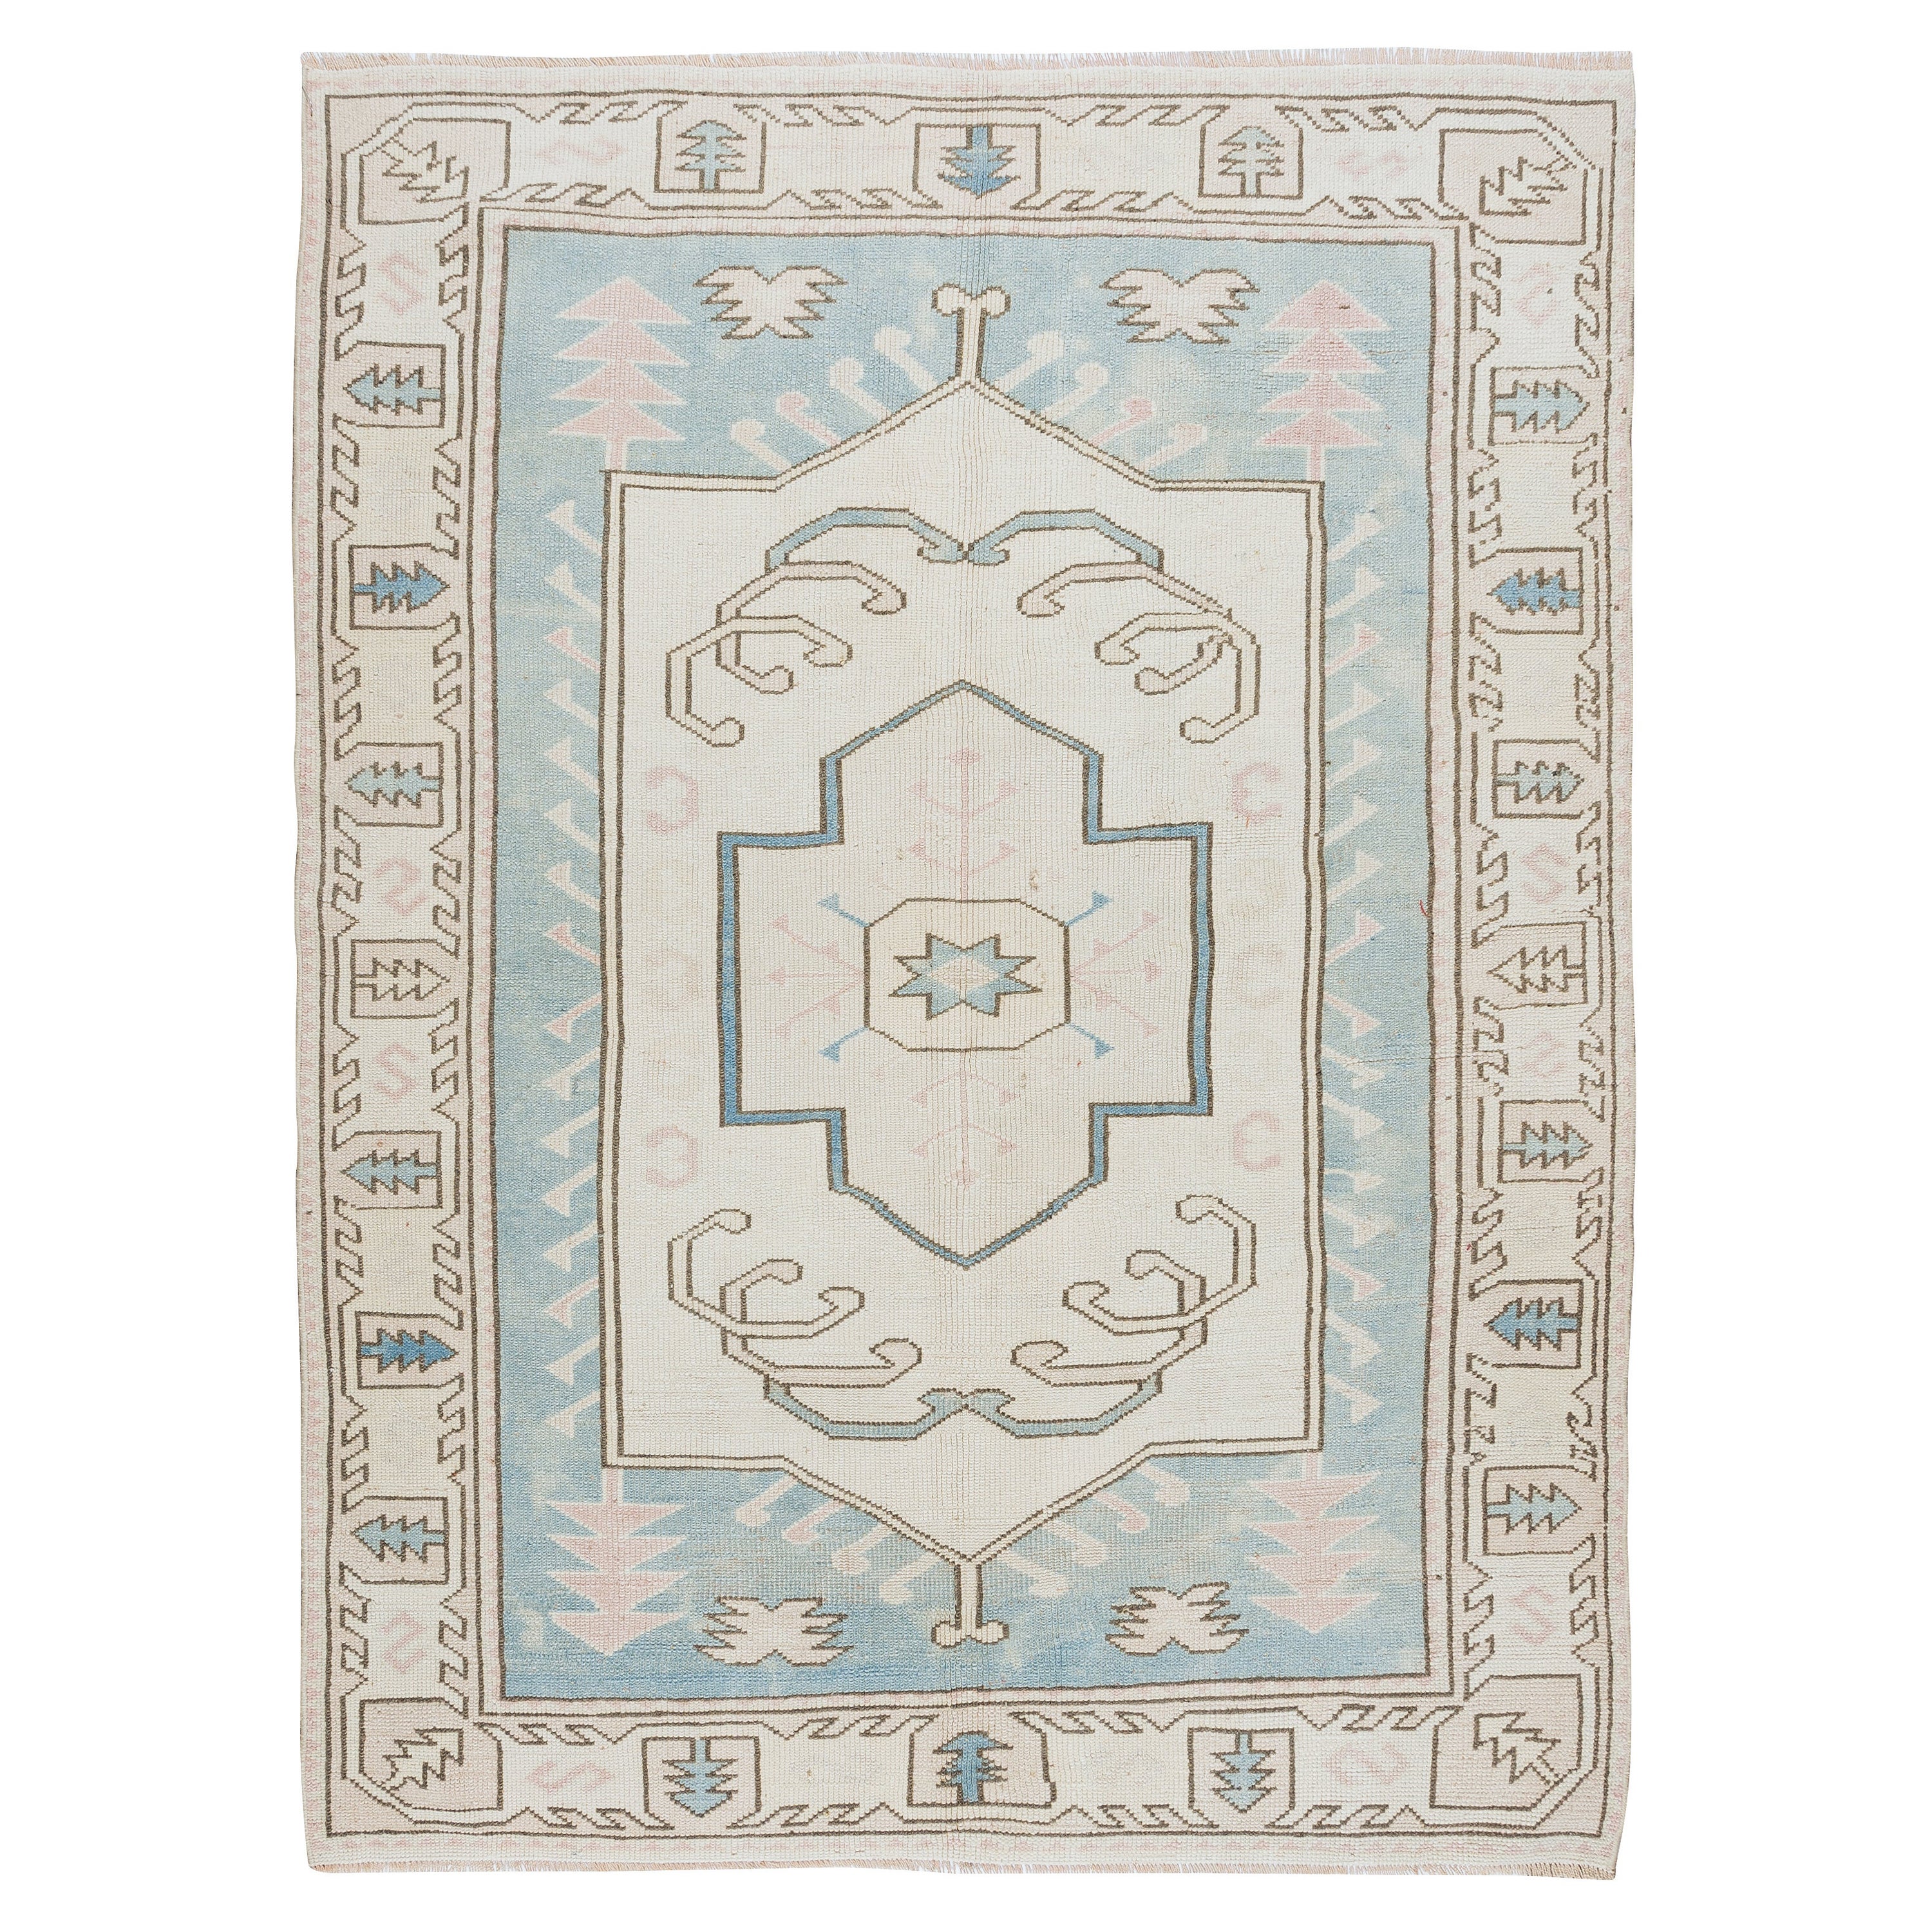 5x6.6 Ft Vintage Handmade Turkish Geometric Wool Area Rug in Light Blue & Cream